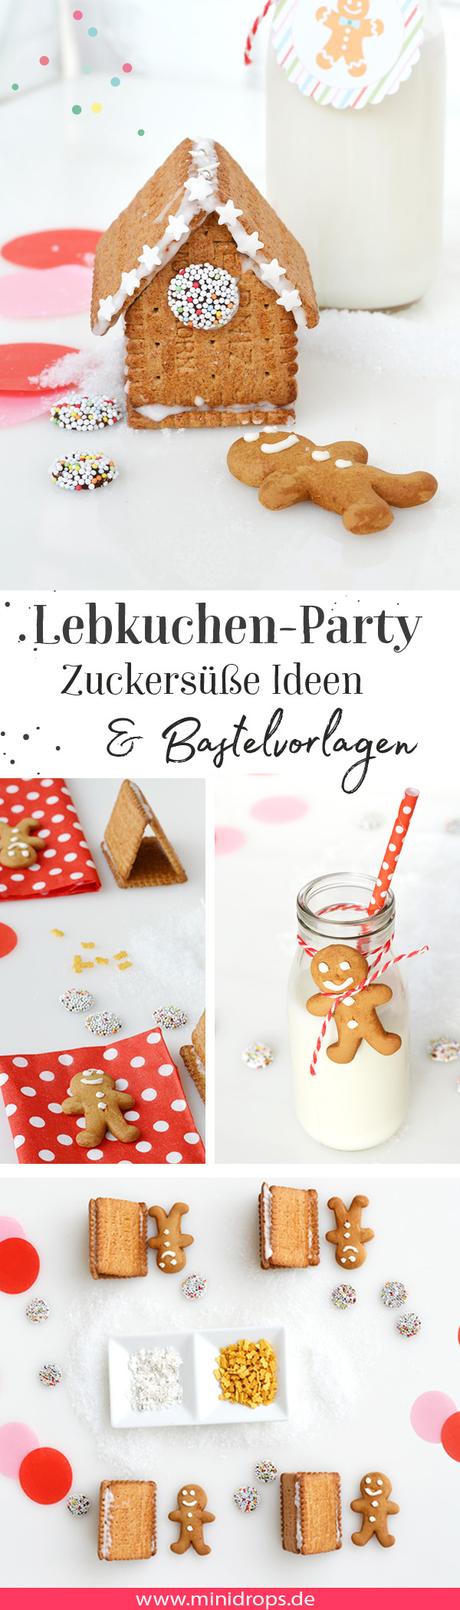 Lebkuchenhaus Party Bastelvorlagen